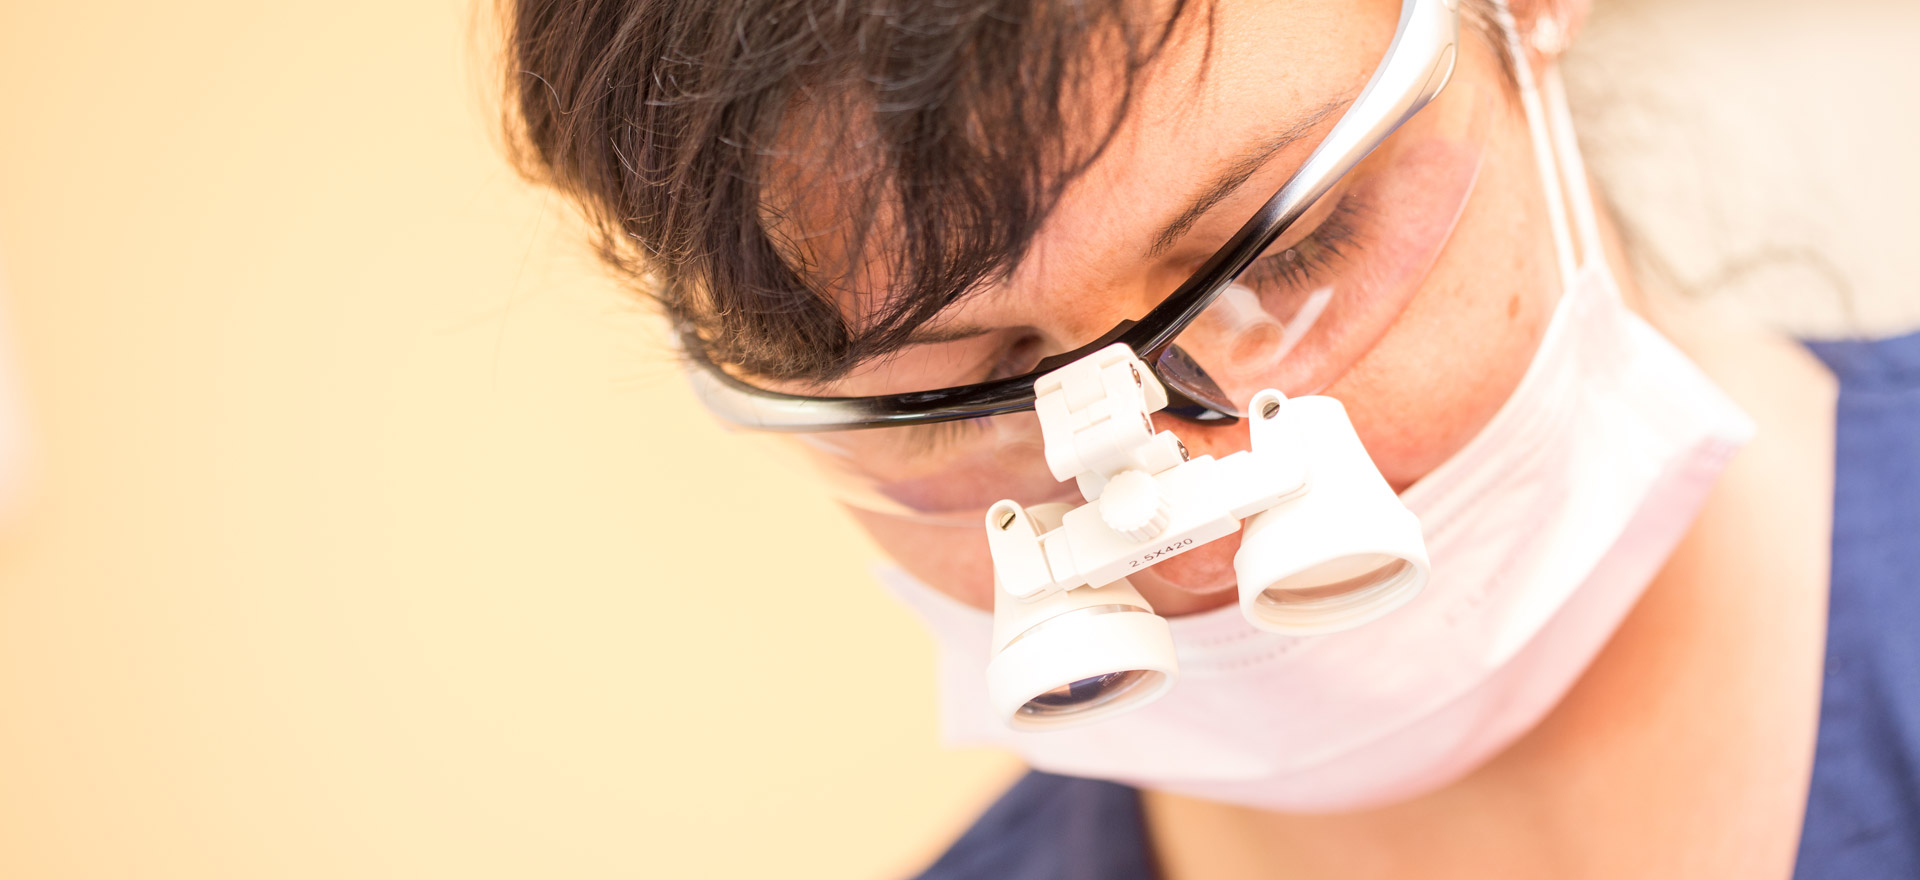 Dentalhygienikerin mit Lupenbrille führt chirurgische Parodontosebehandlung durch.